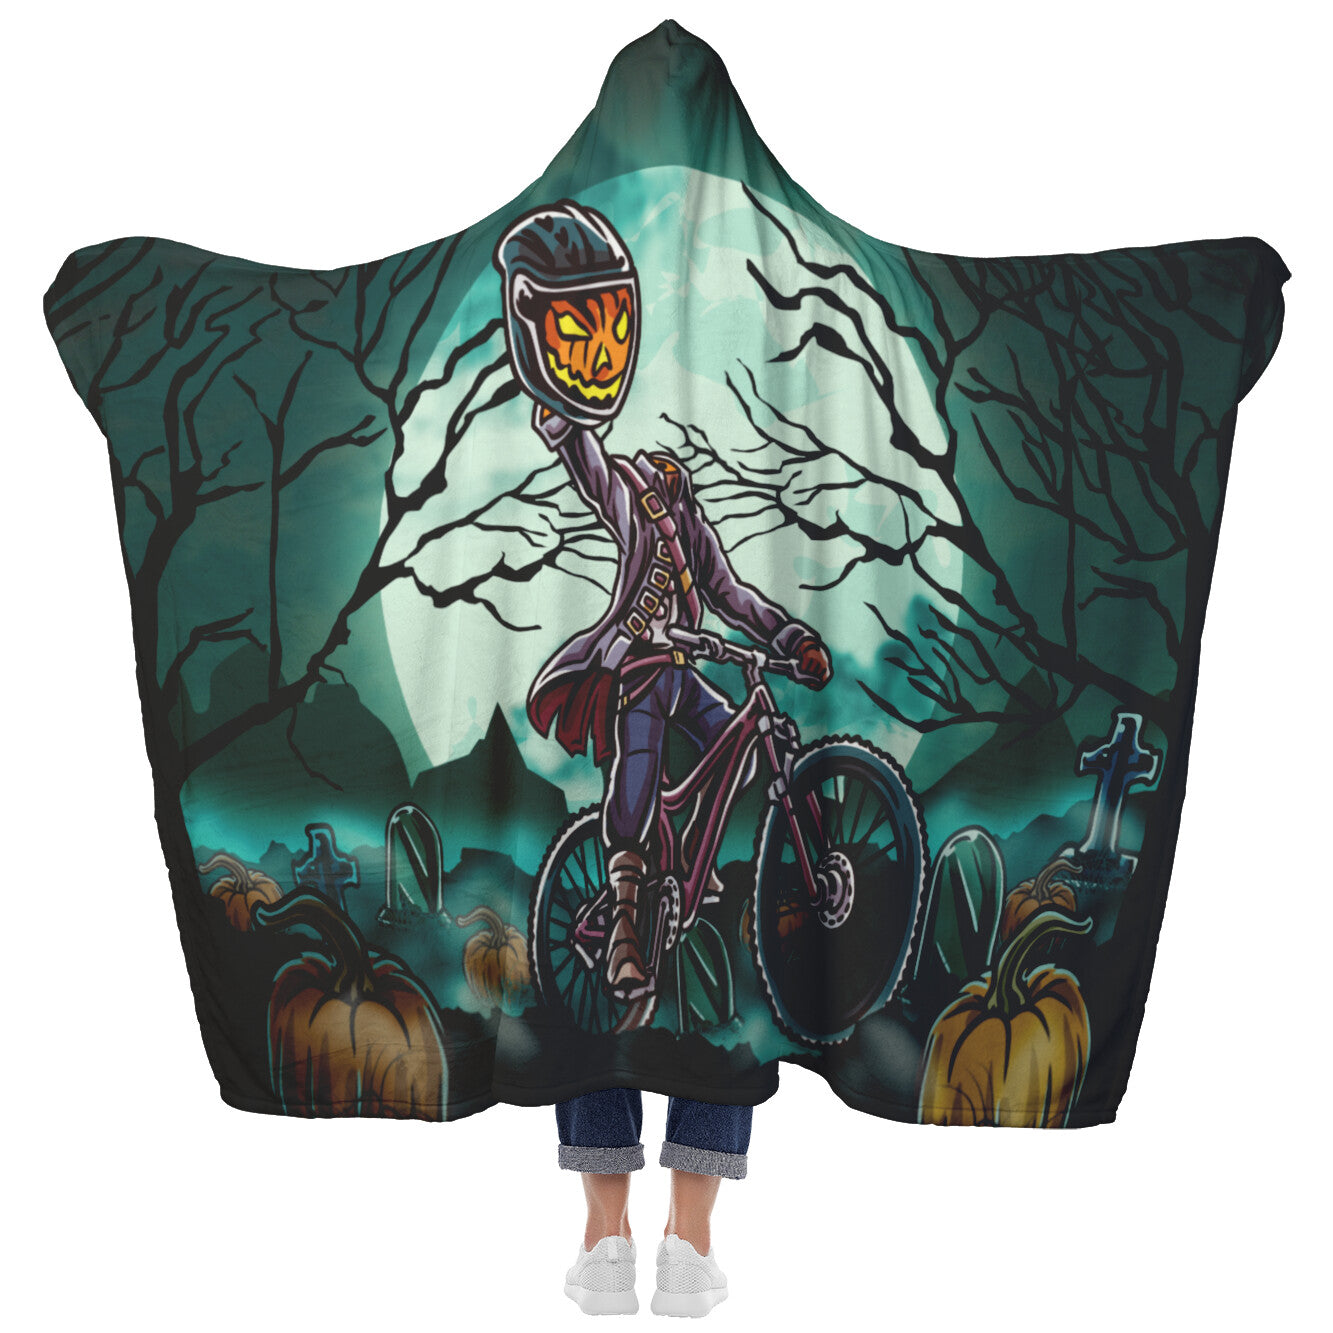 Mountain Bike-Themed Headless Rider Hooded Blanket